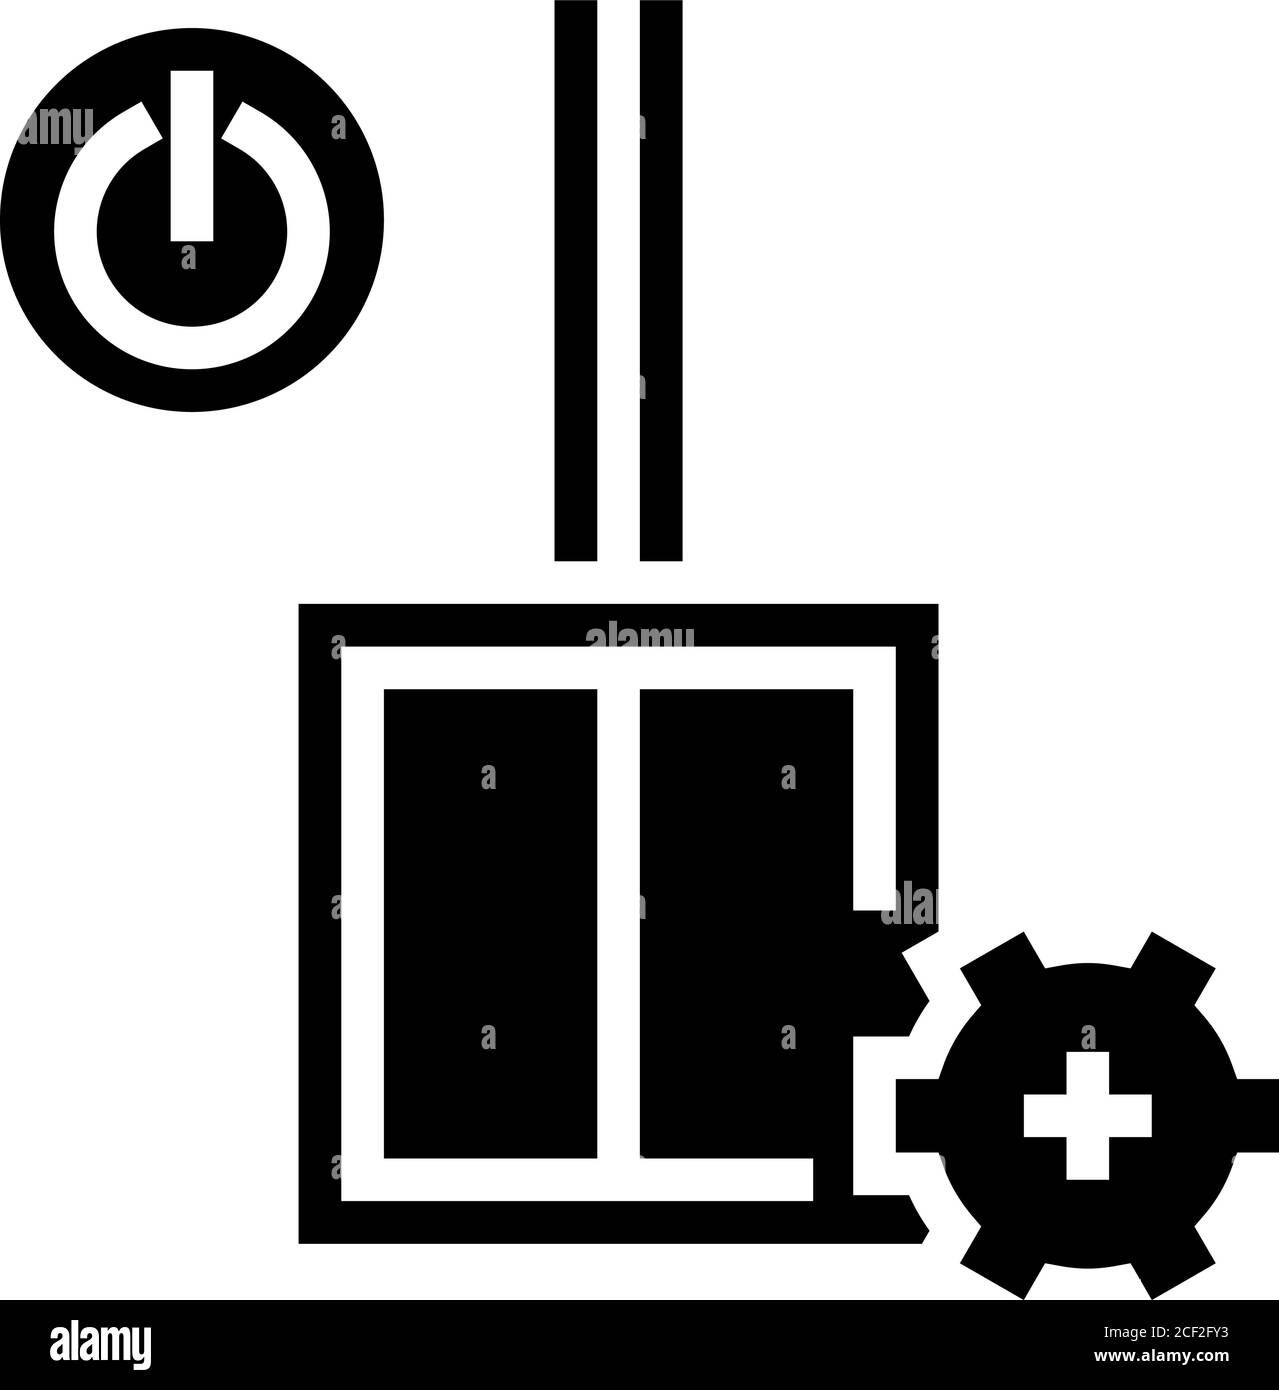 immagine vettoriale dell'icona glifo di installazione dello switch Immagine  e Vettoriale - Alamy